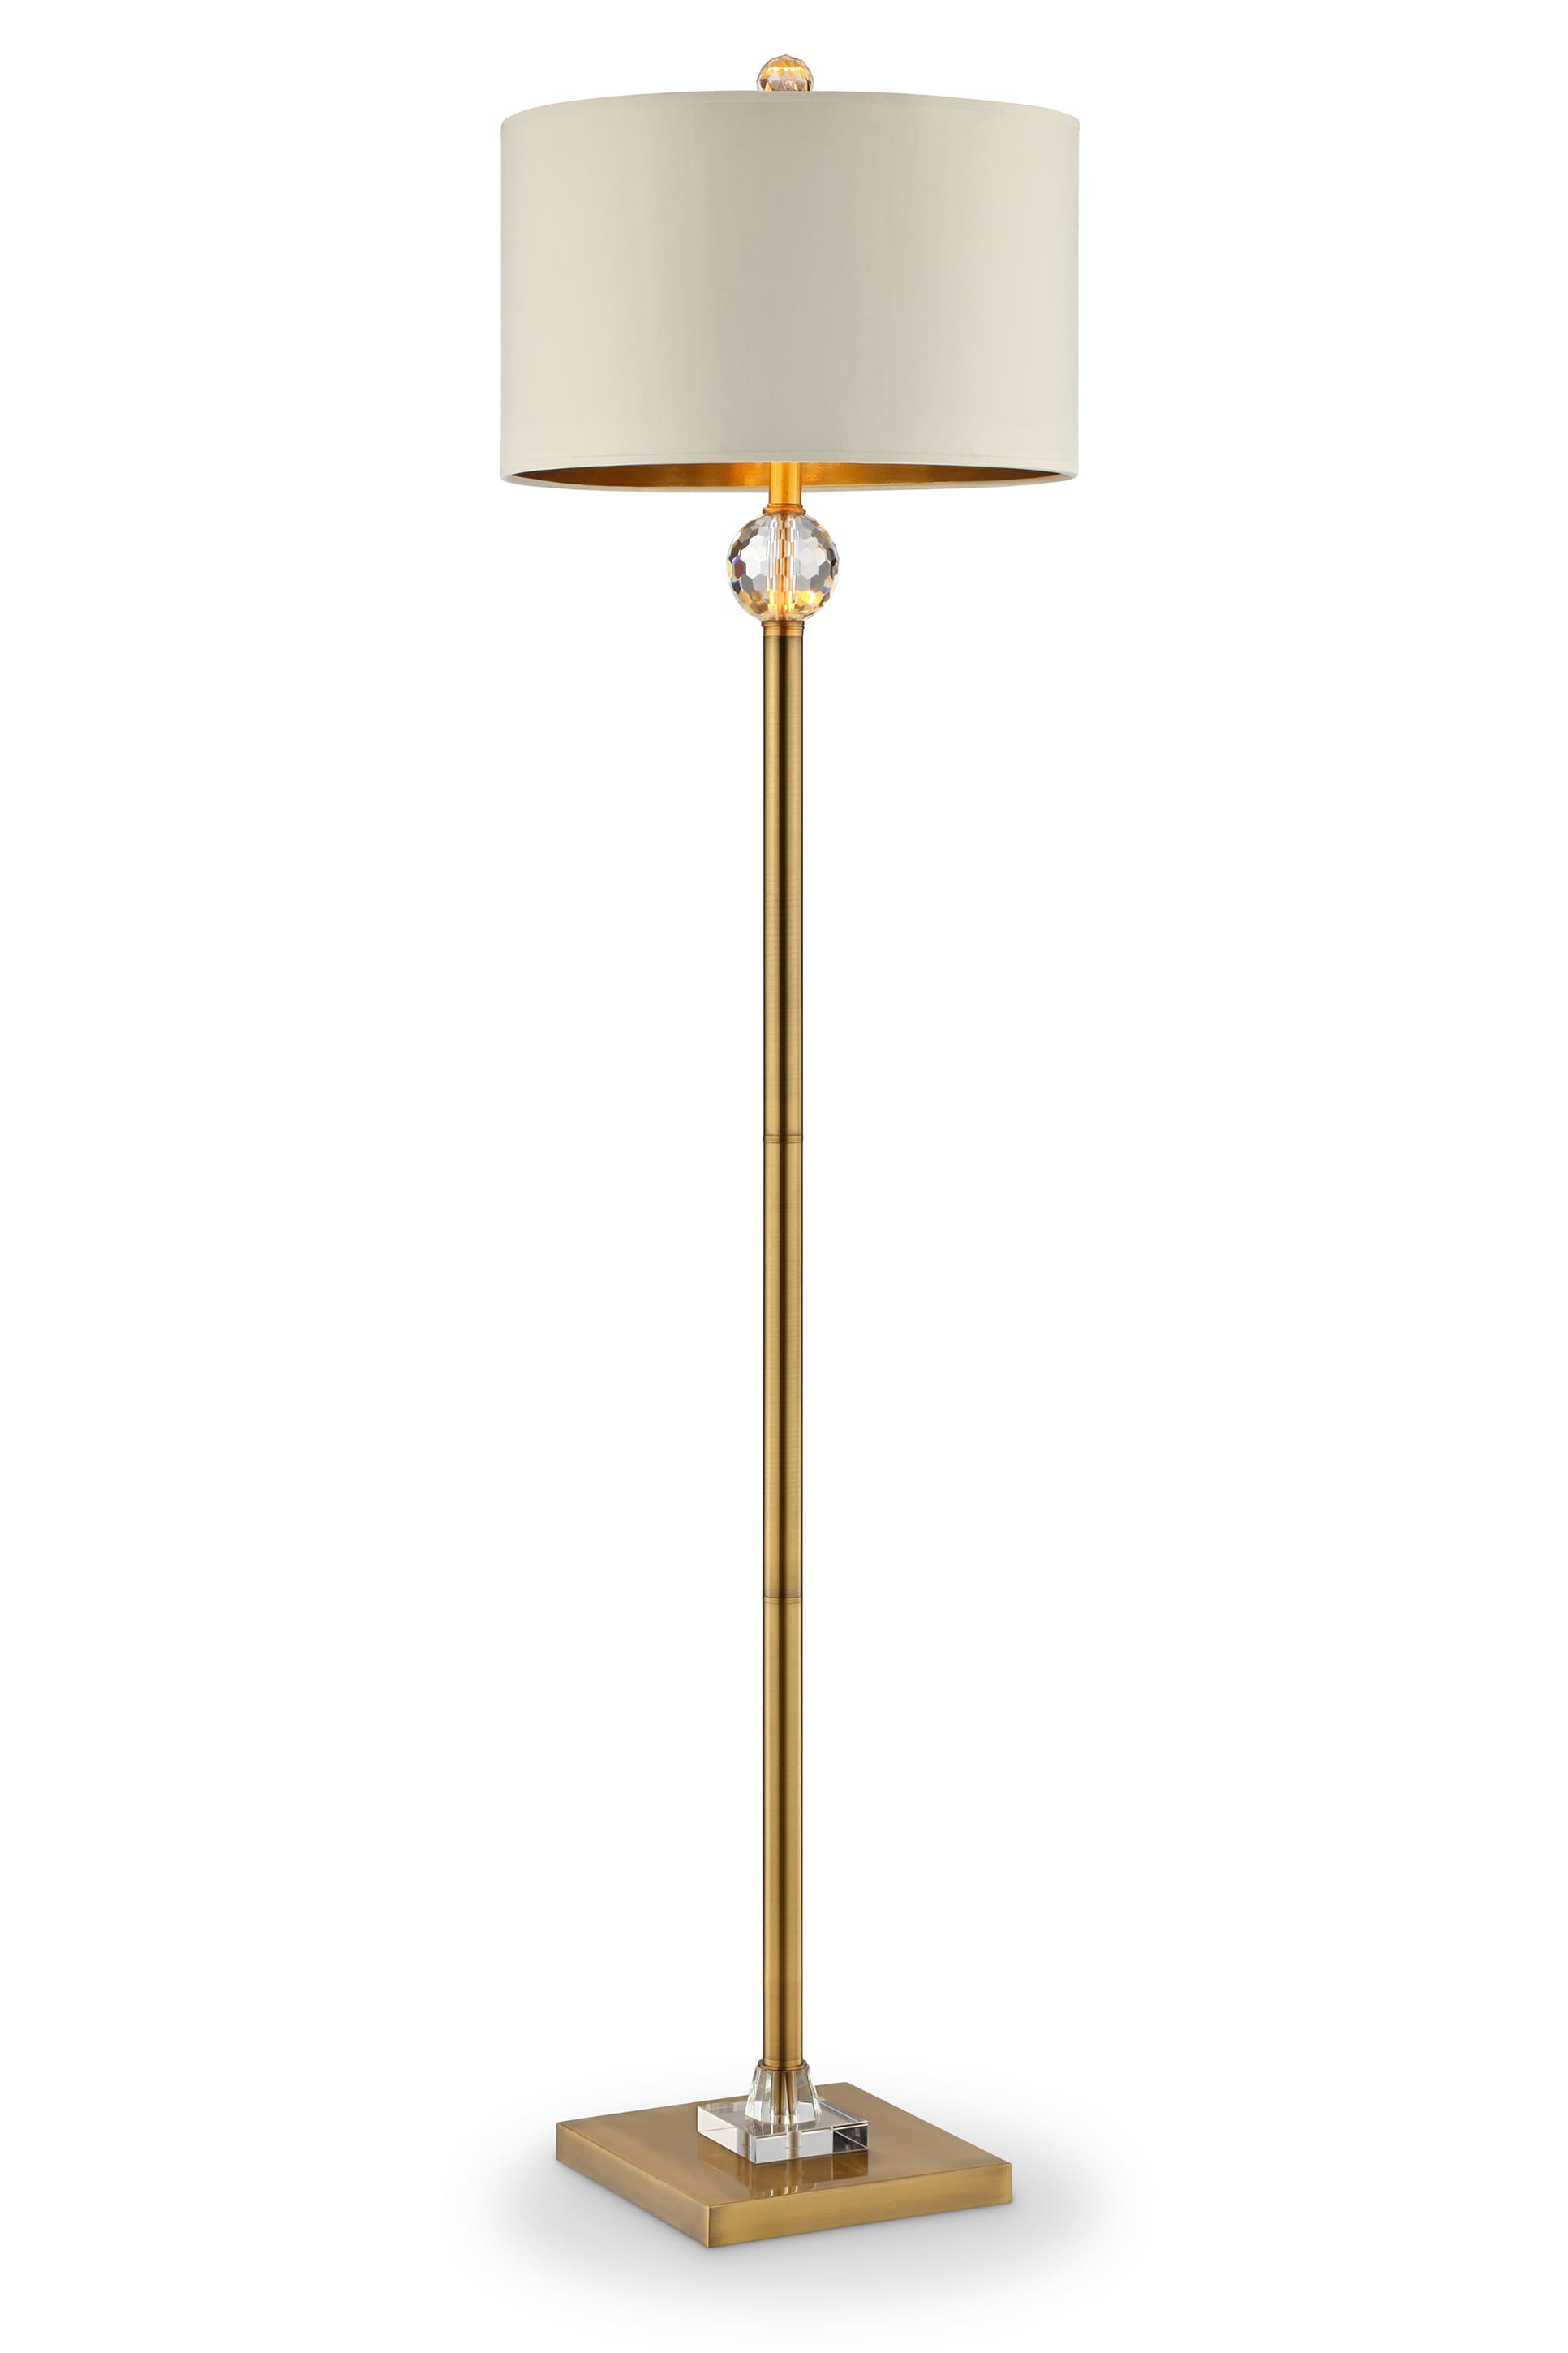 ORE International Perspicio 63.25-in Gold Floor Lamp in the Floor Lamps ...